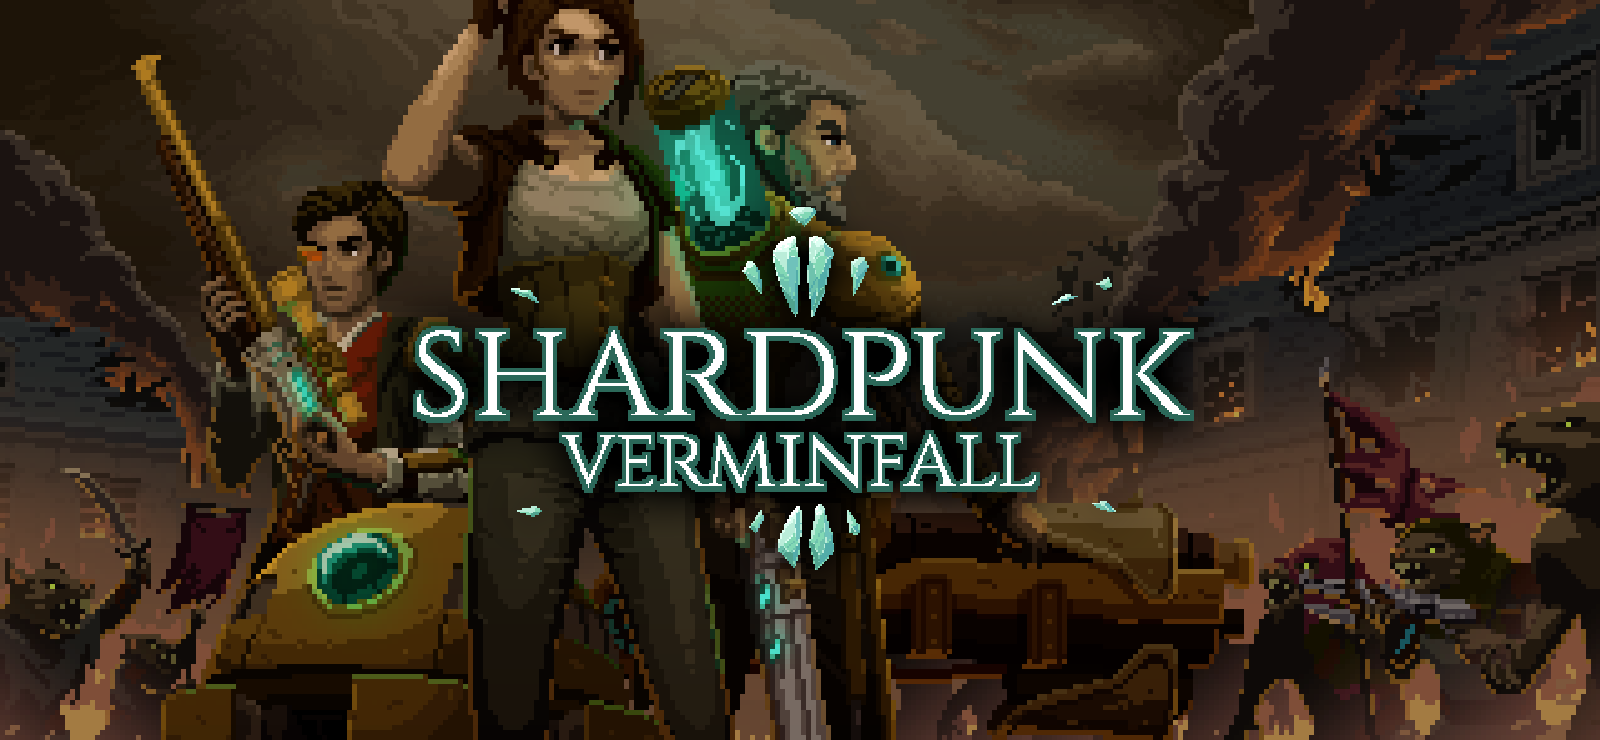 Shardpunk: Verminfall, presto in arrivo su PC 8